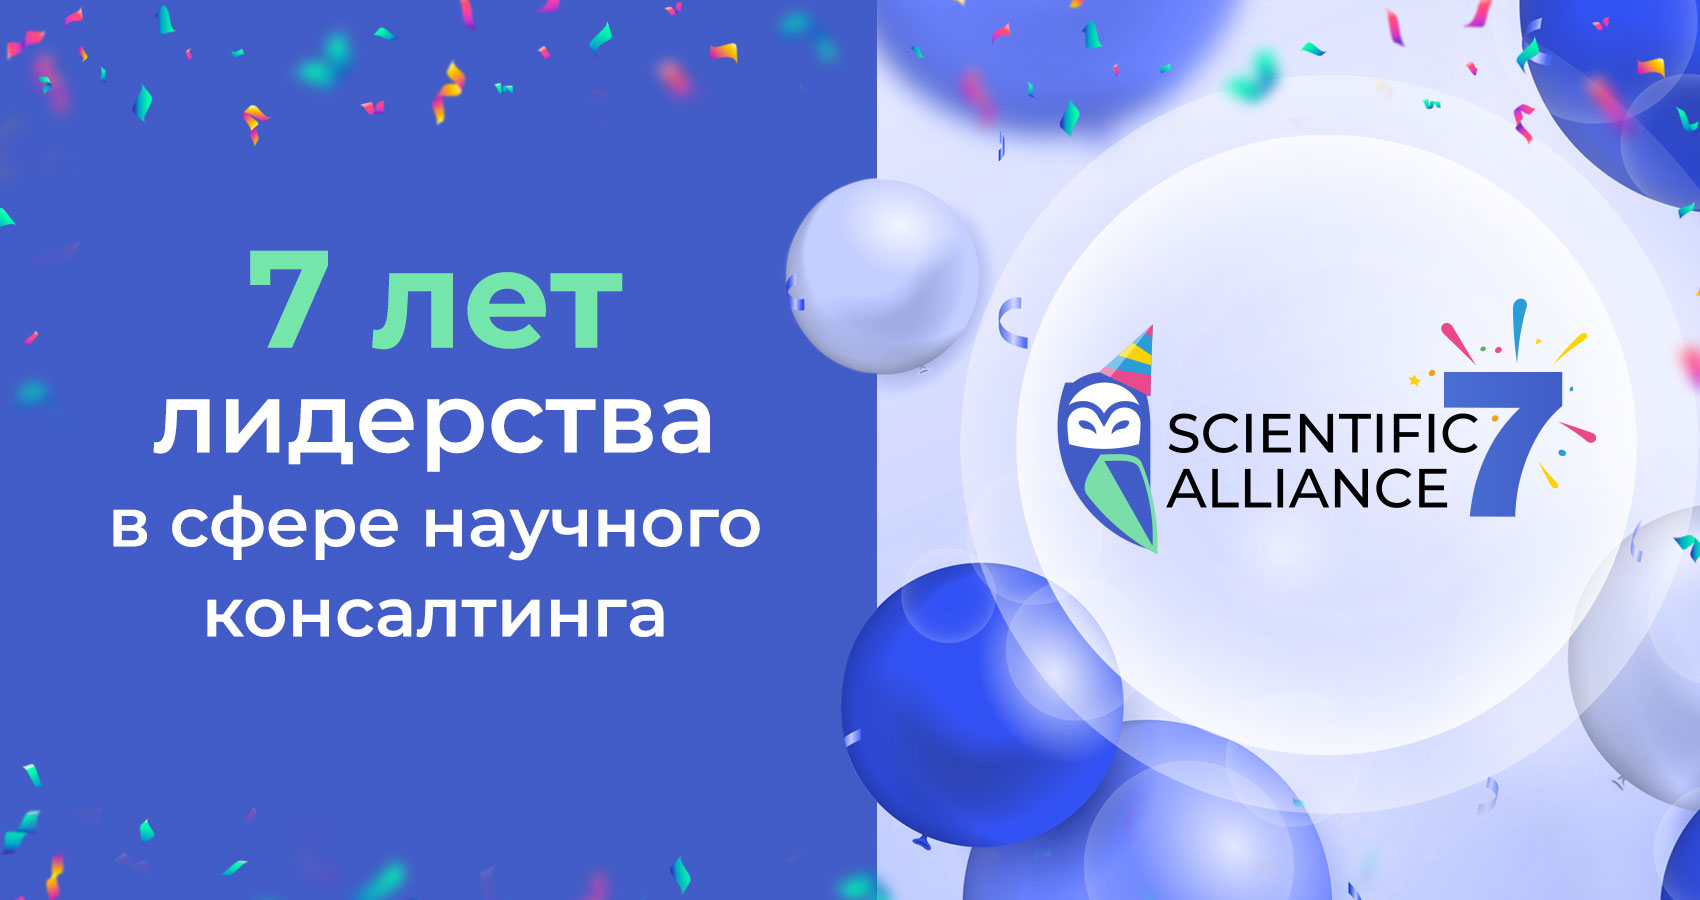 «SCIENTIFIC ALLIANCE» - 7 ЛЕТ ЛИДЕРСТВА!